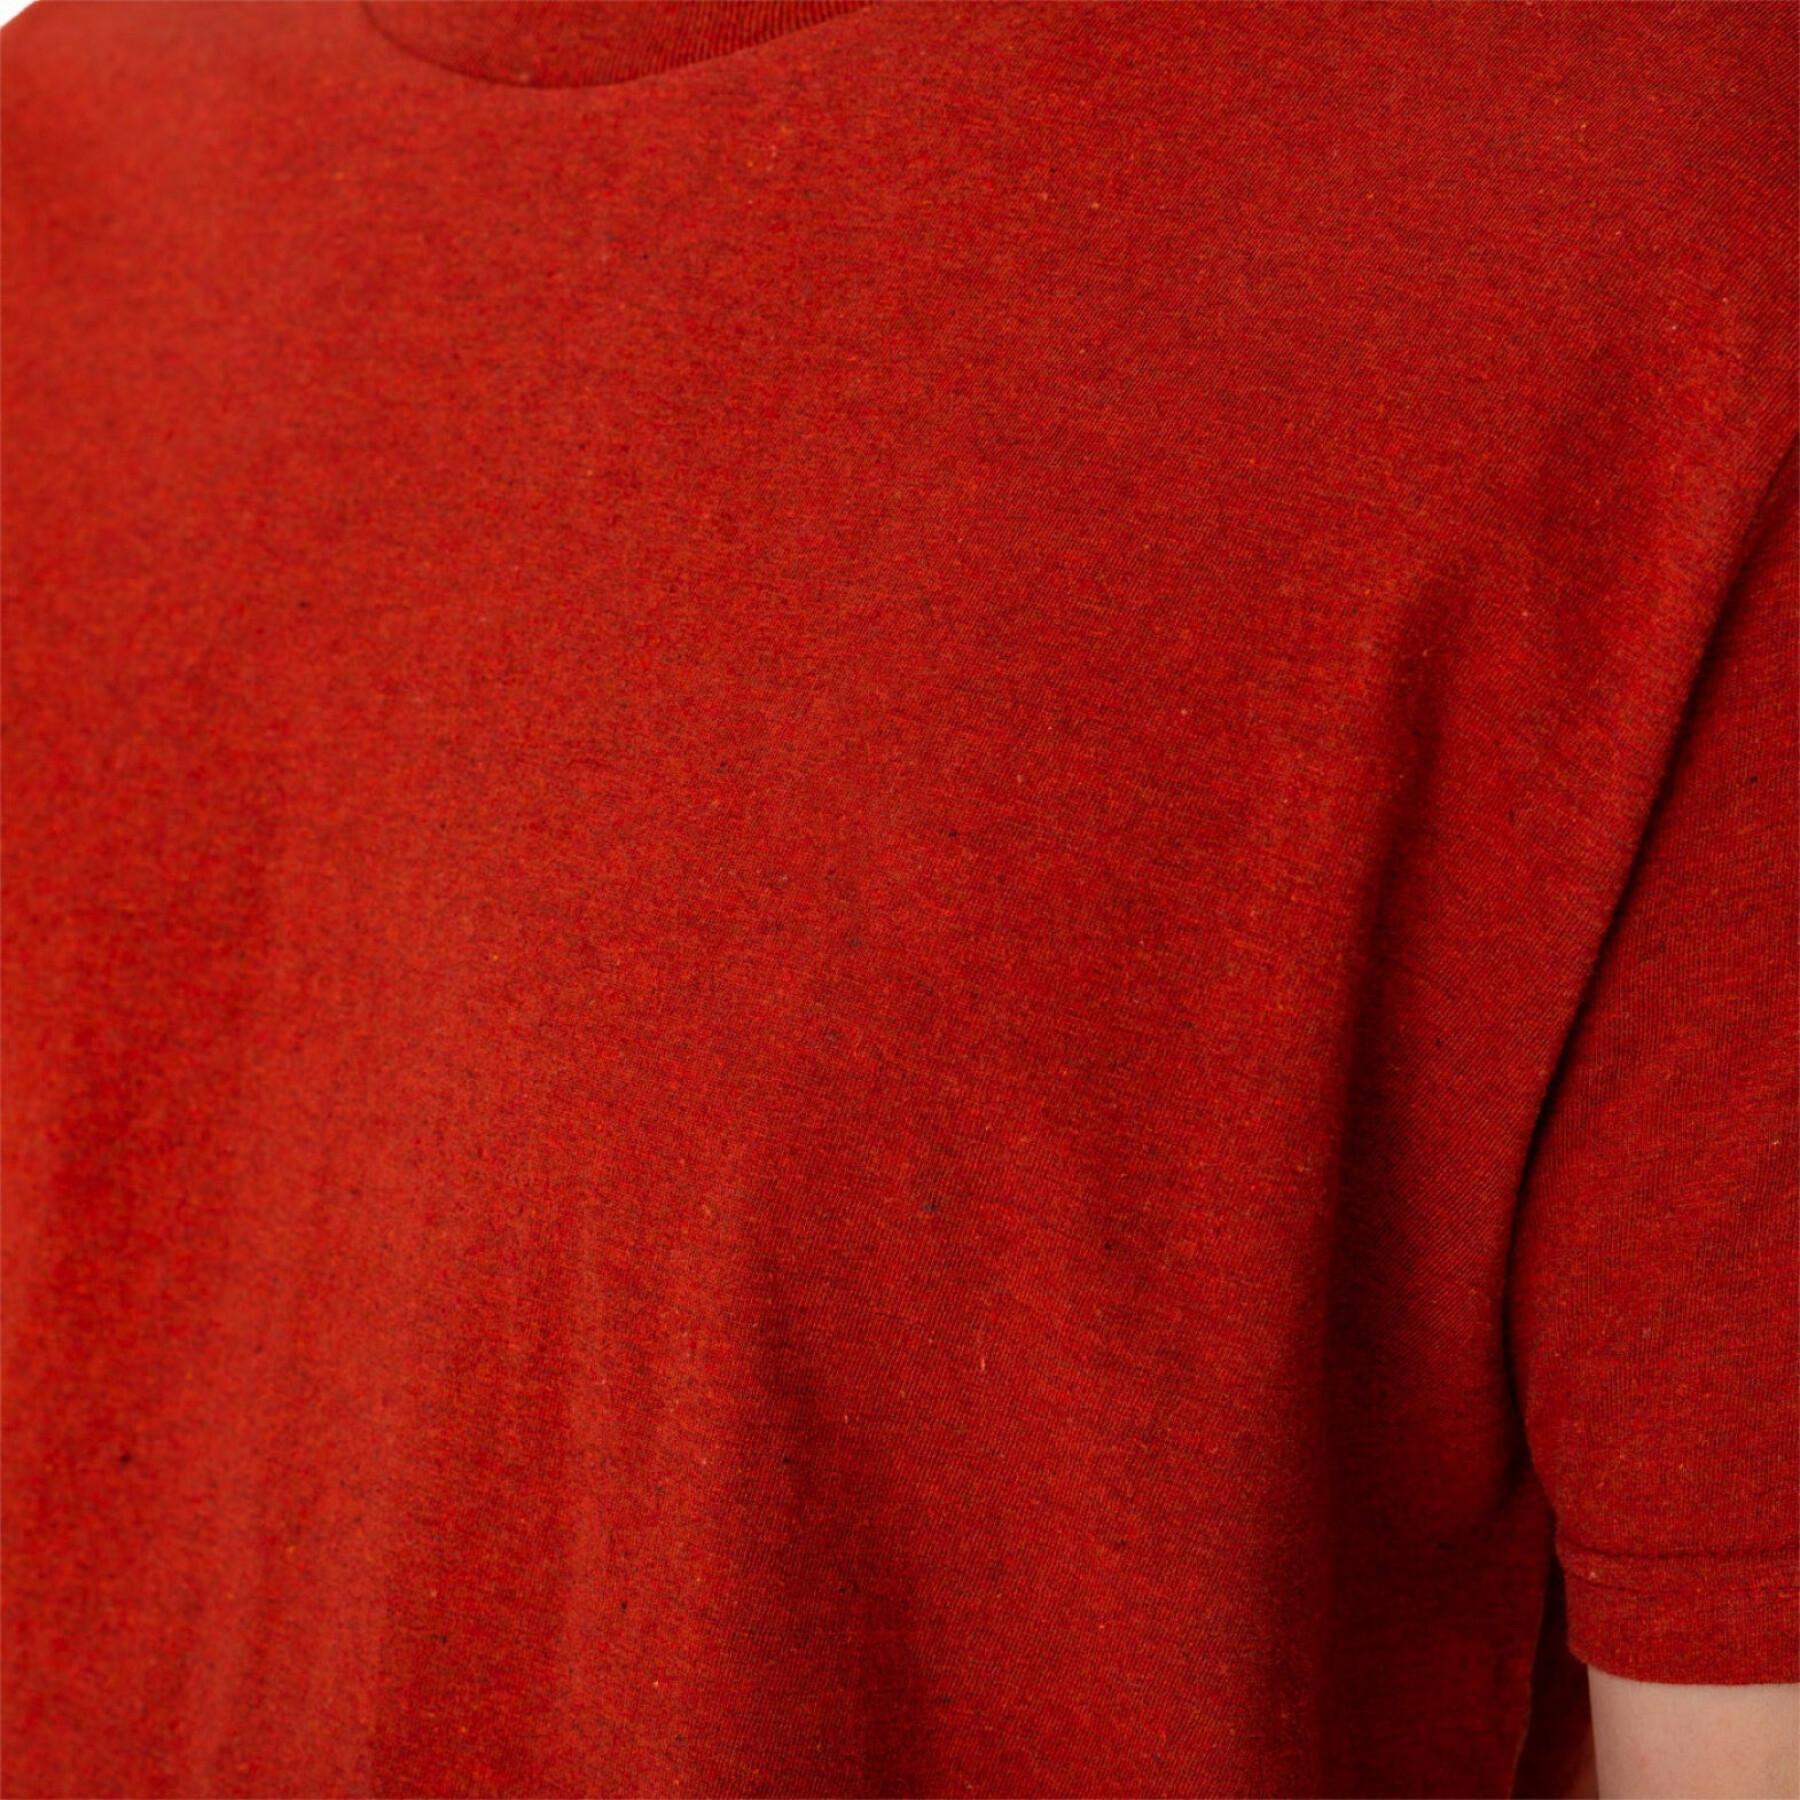 Camiseta de pescoço redondo Revolution